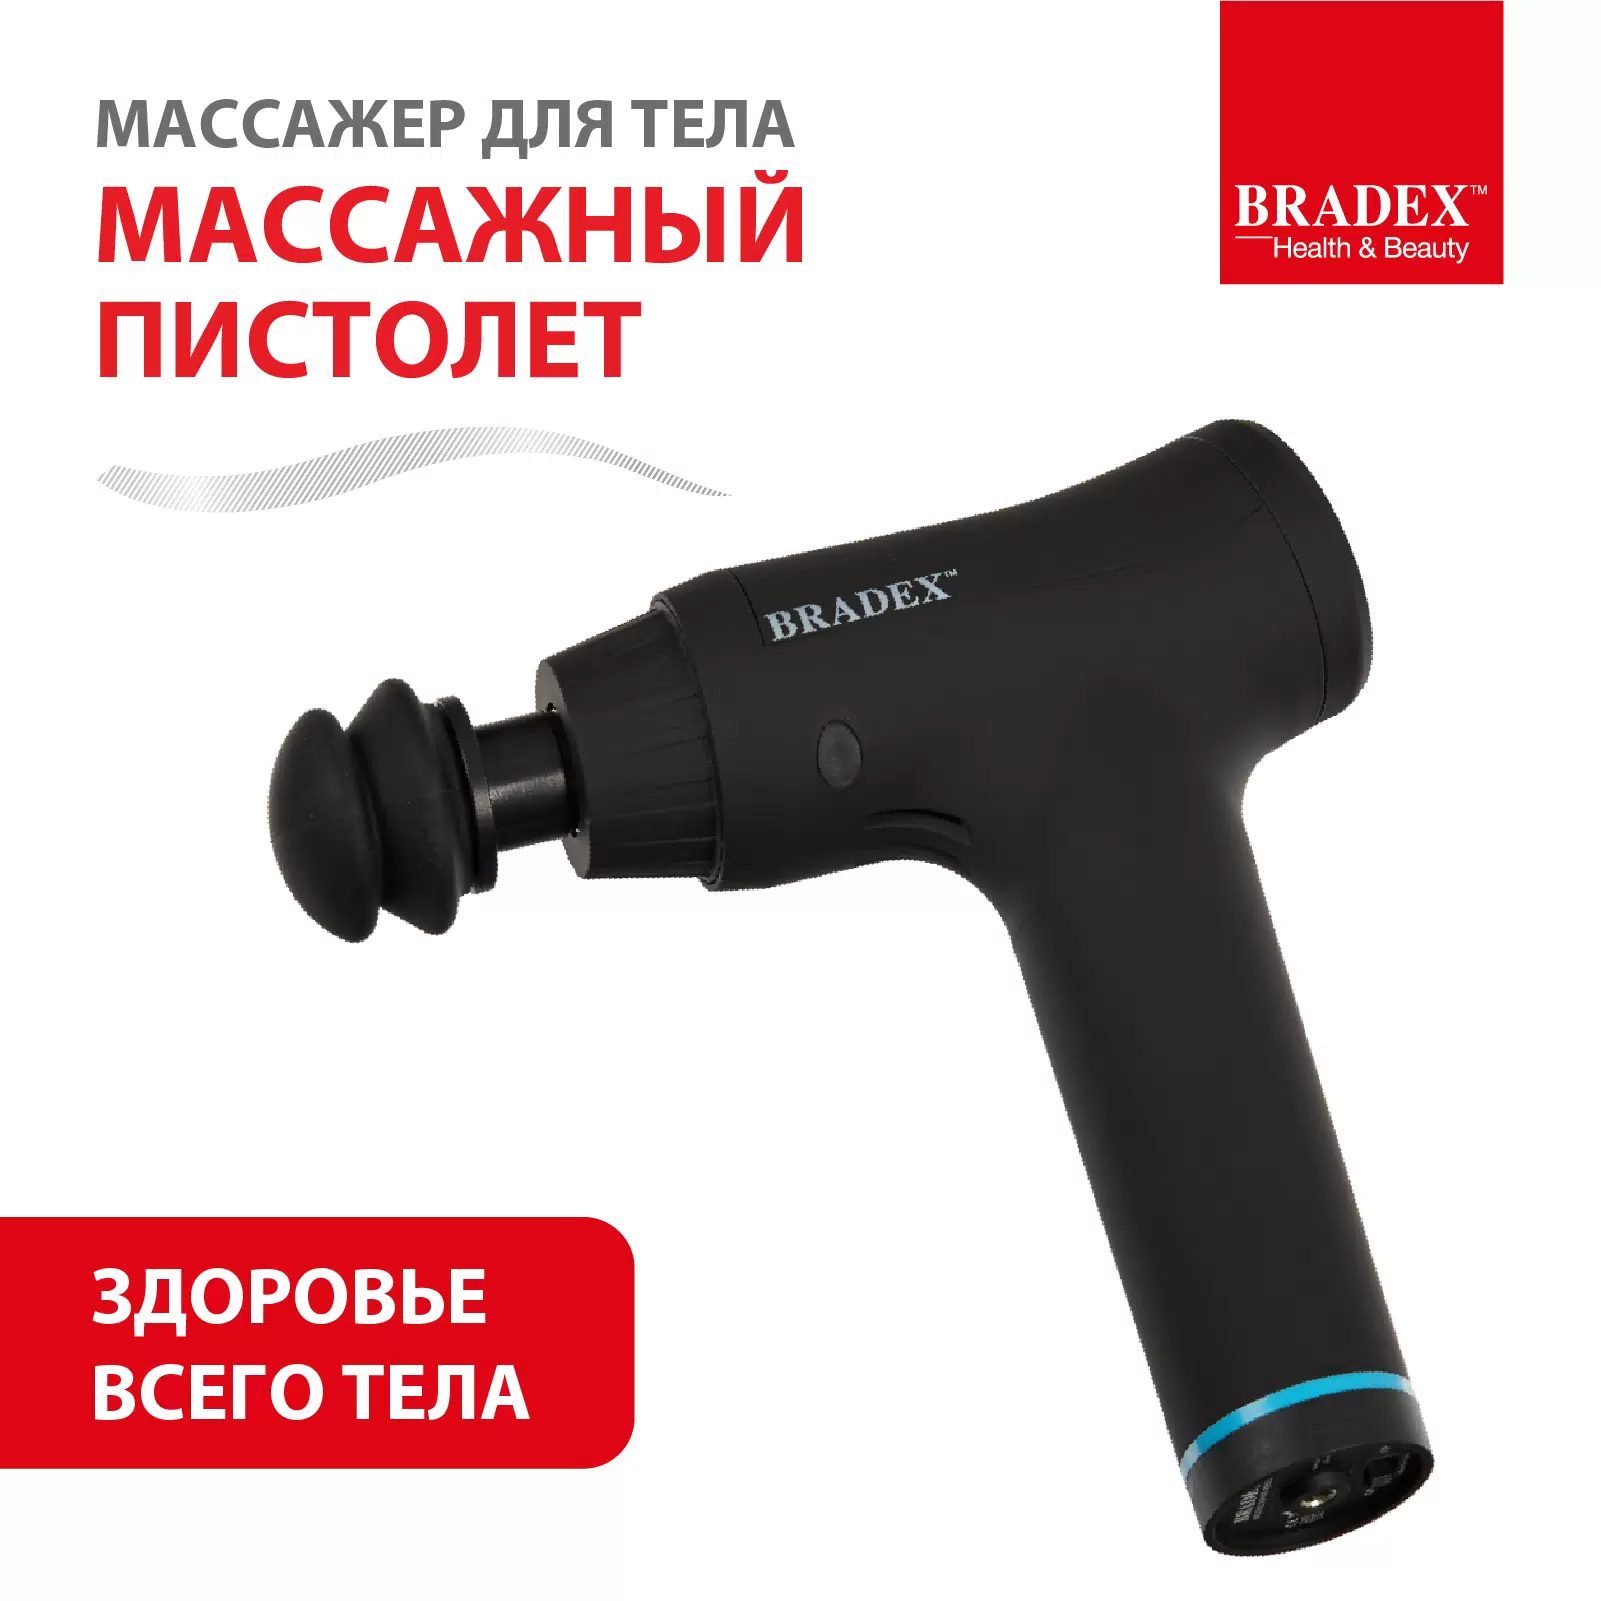 Характеристики - массажер для тела Bradex KZ 0561 - VLARNIKA в Донецке